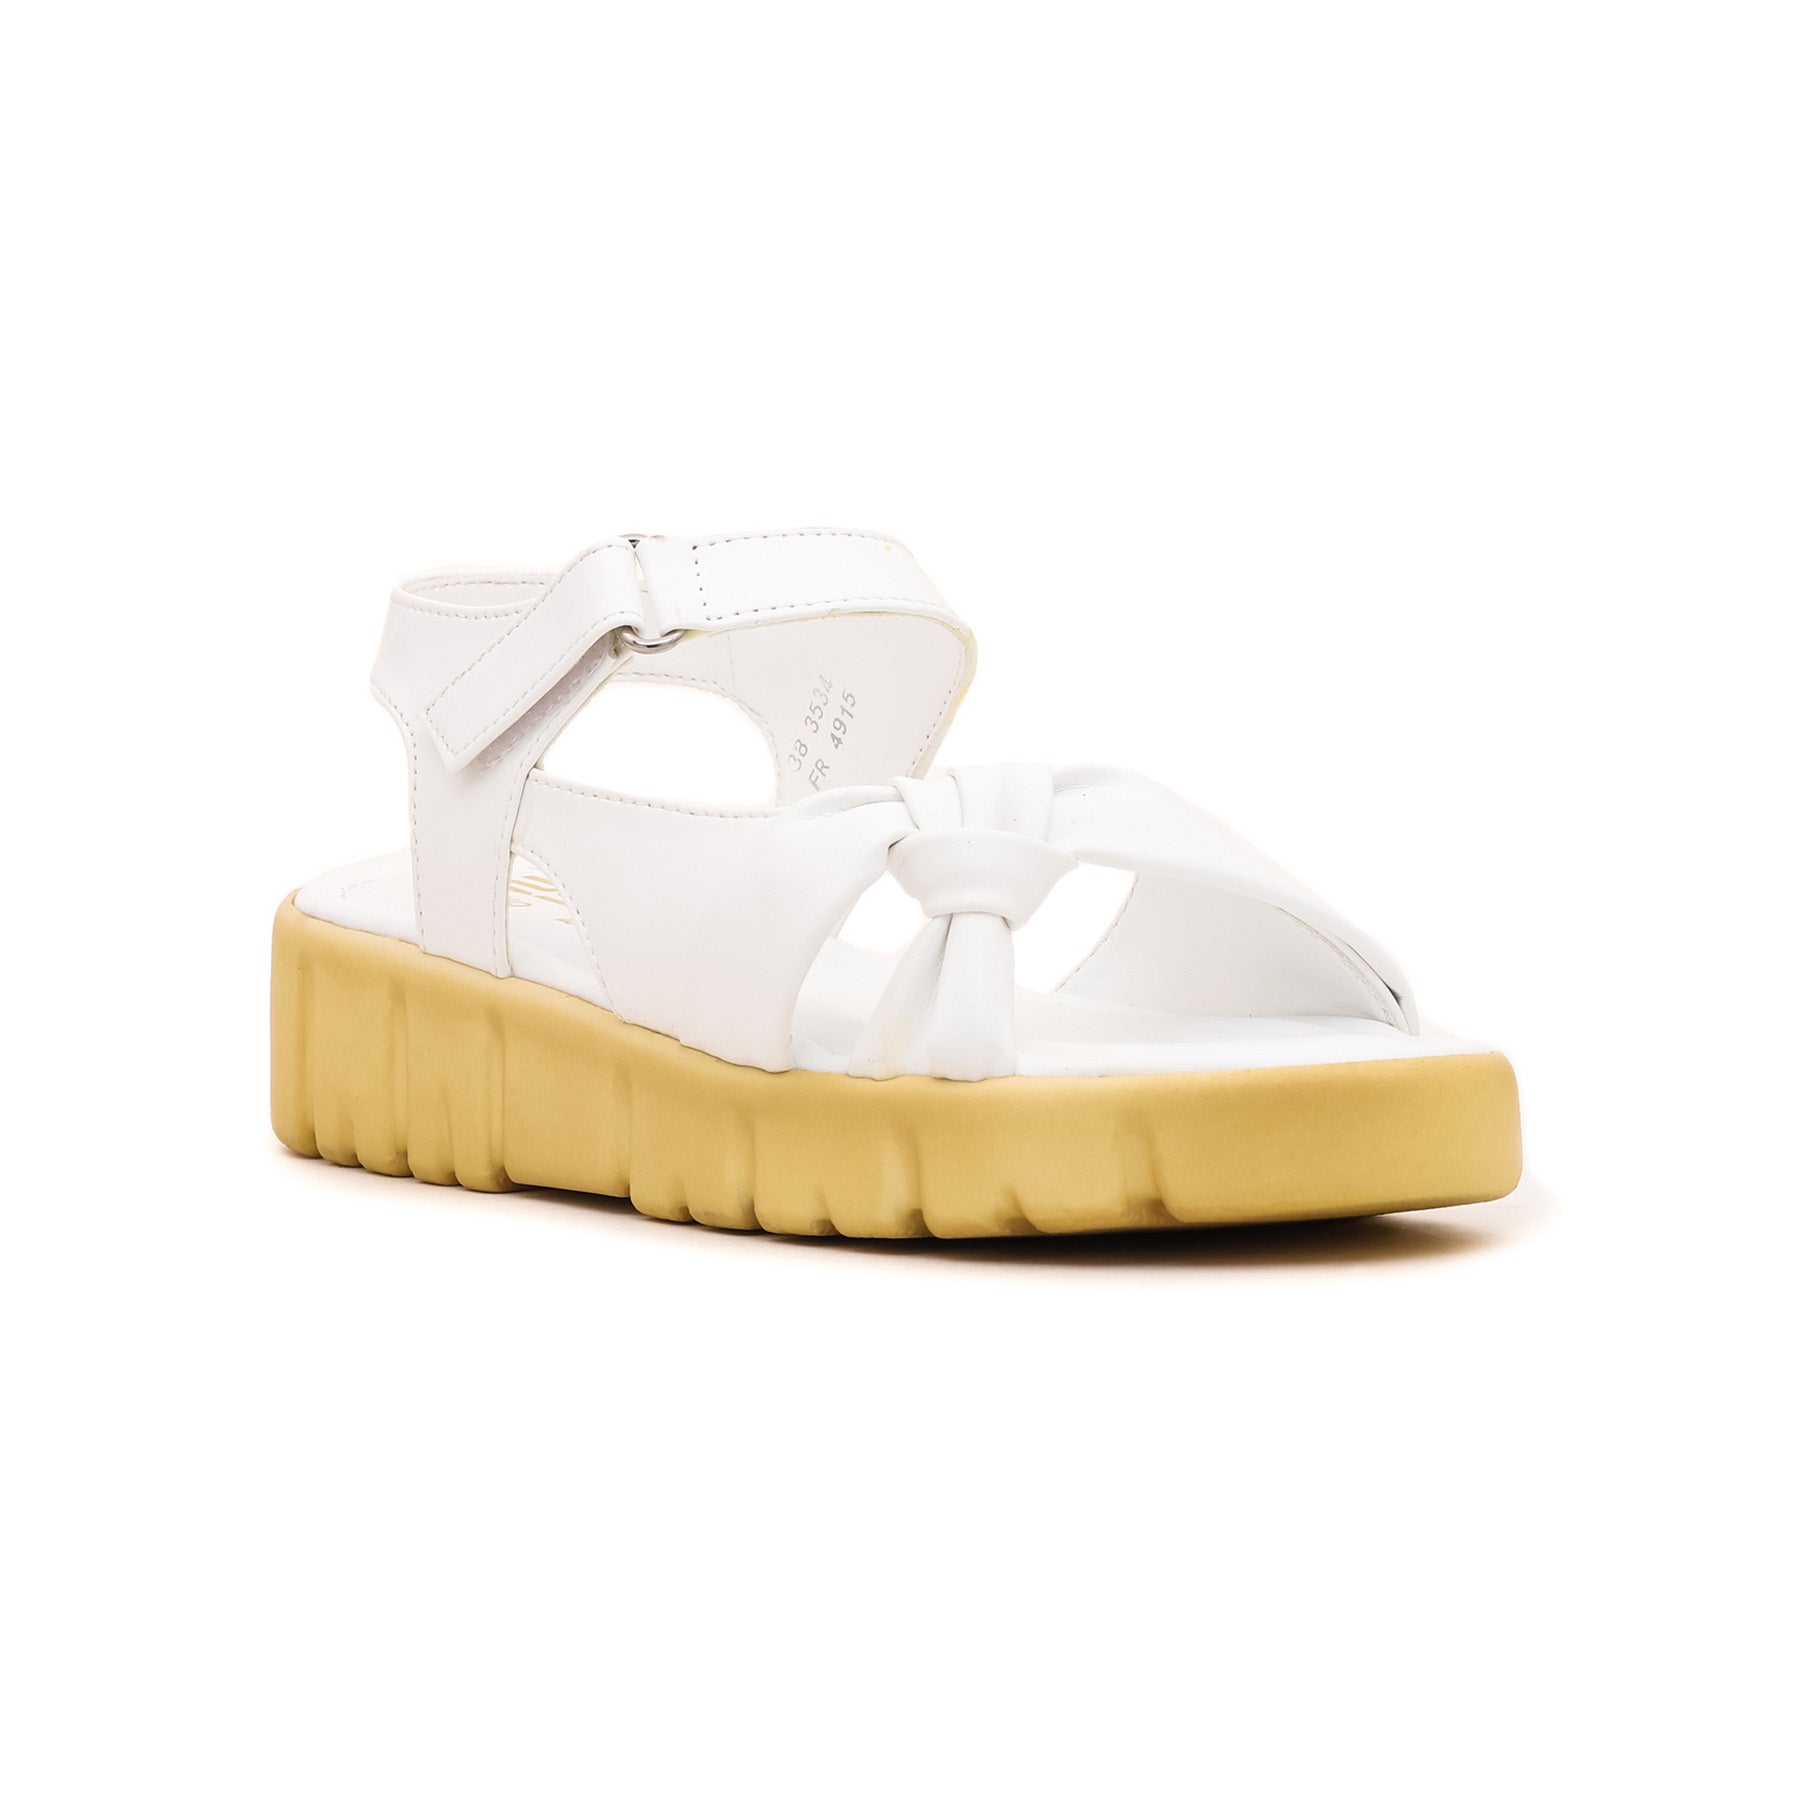 White Formal Sandal FR4915